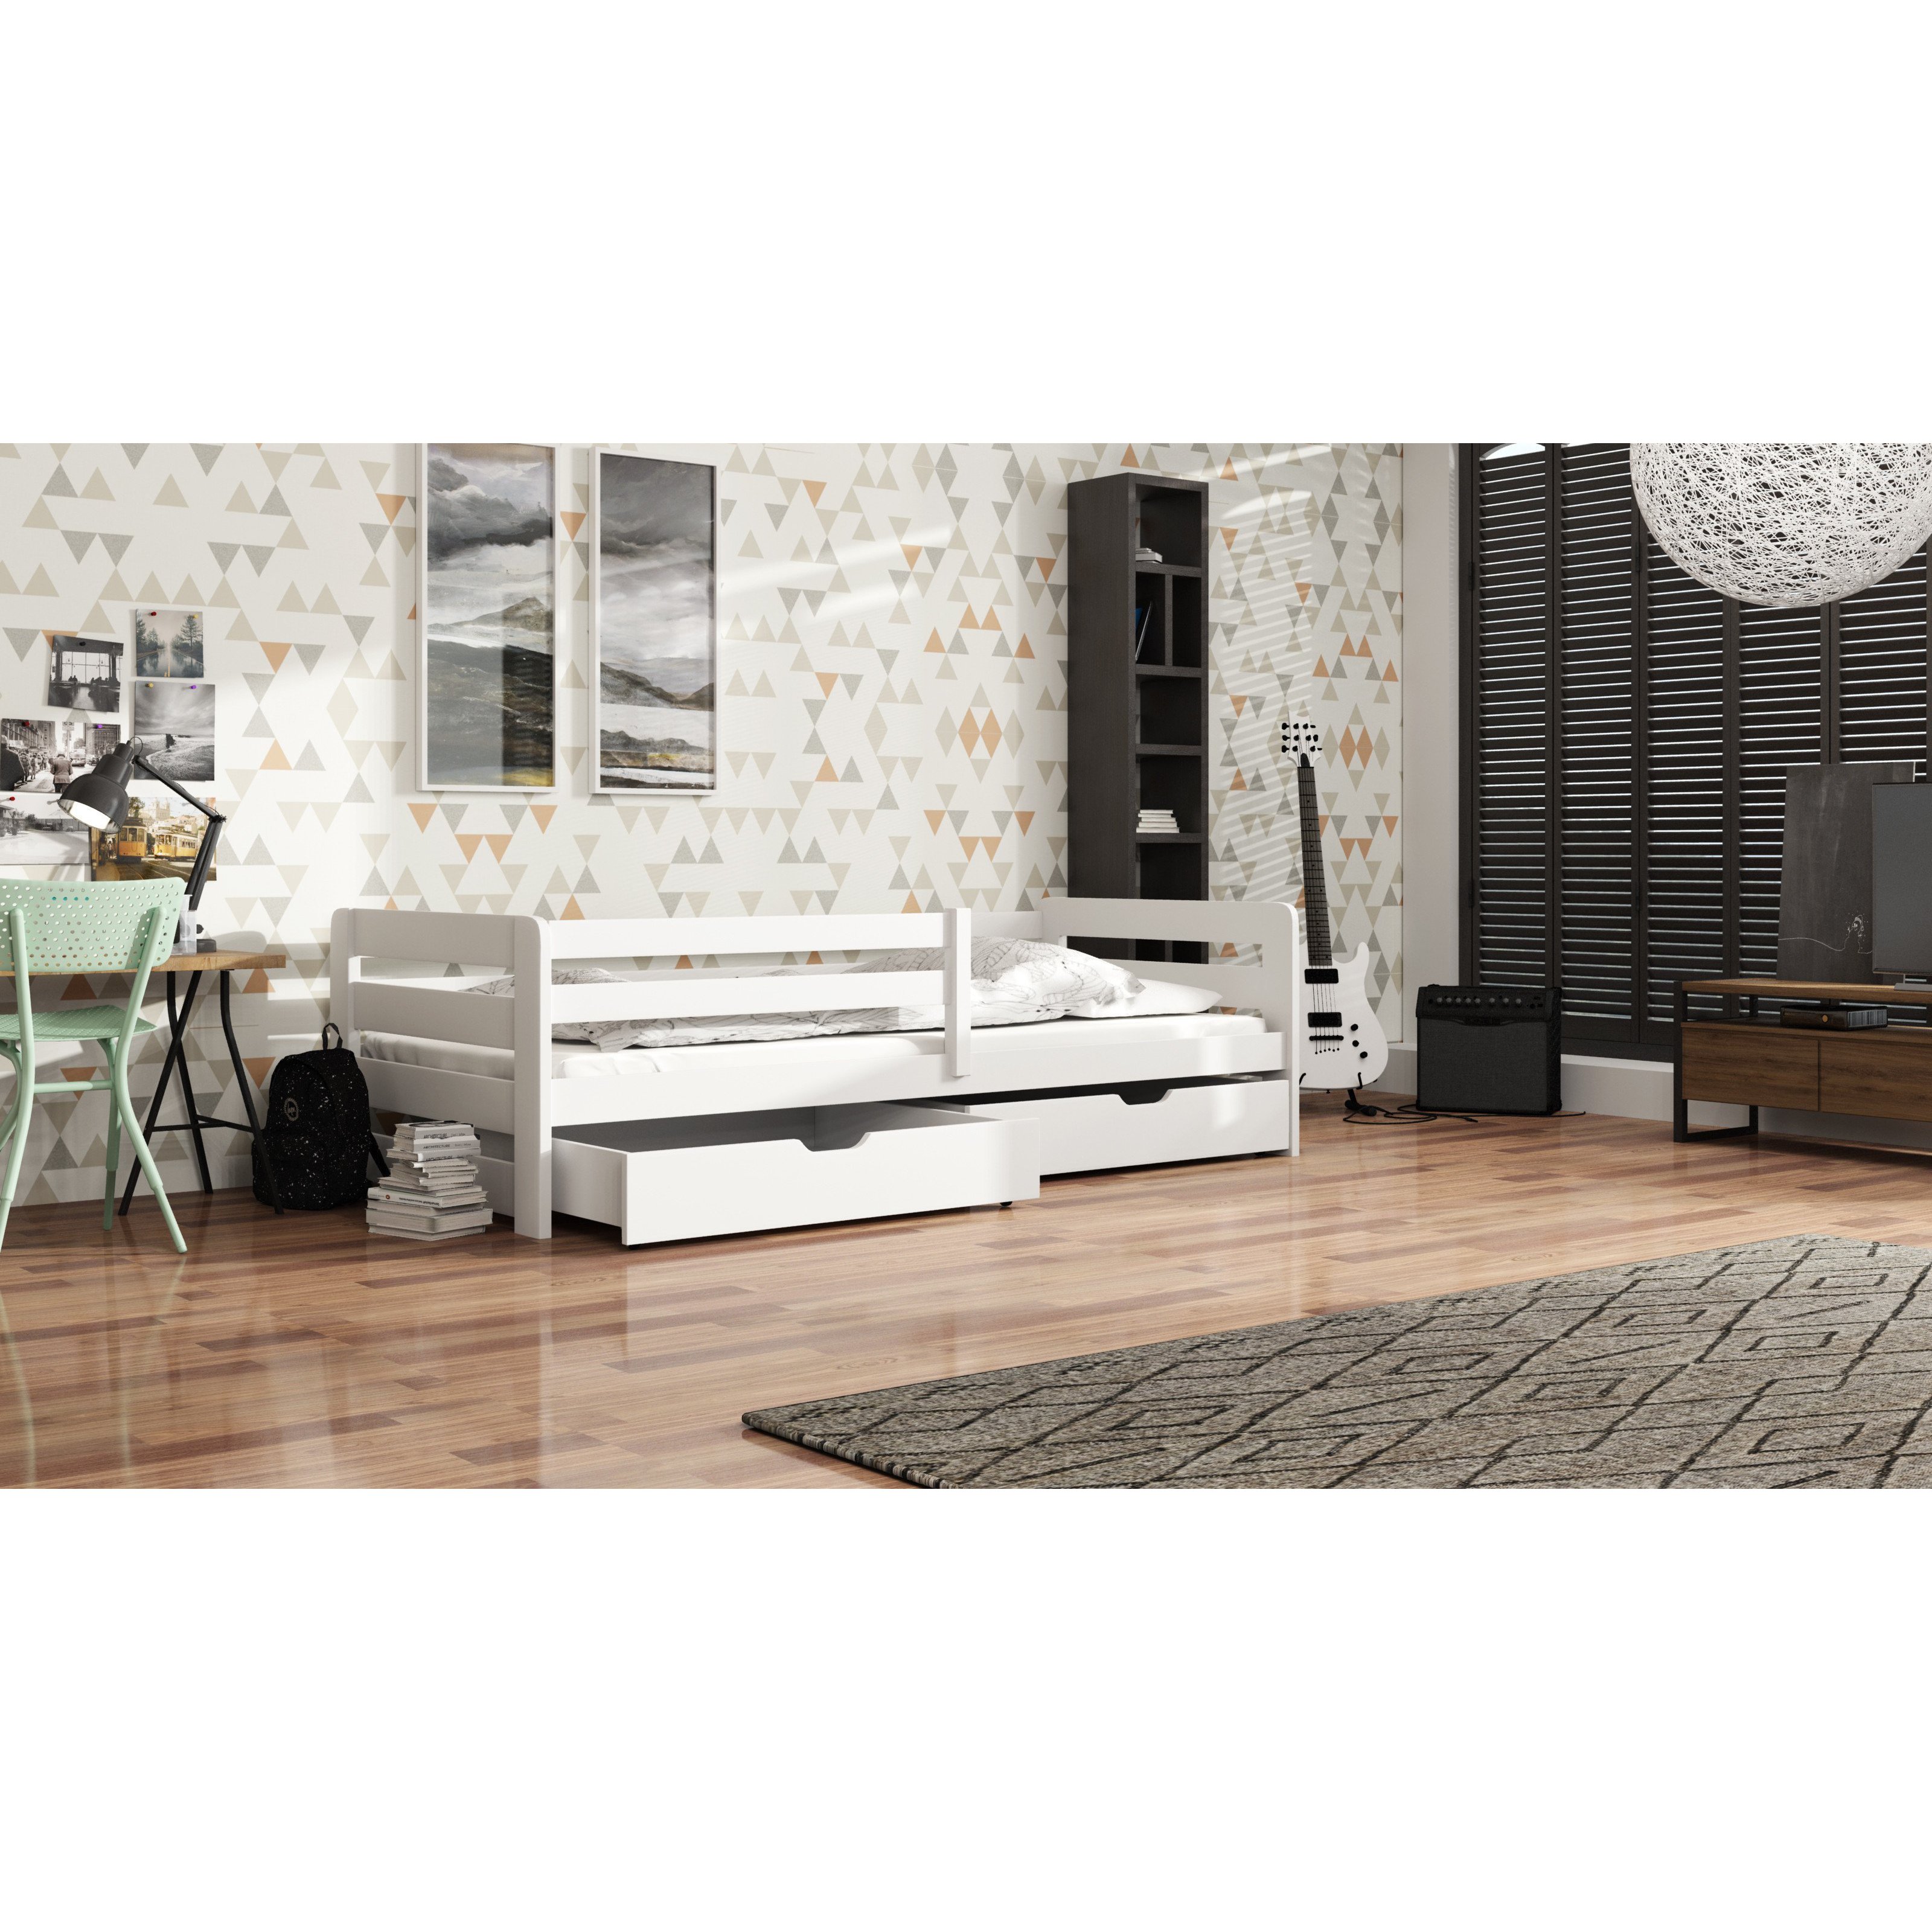 Wooden Bed Ergo with Storage - White Matt Without Mattresses